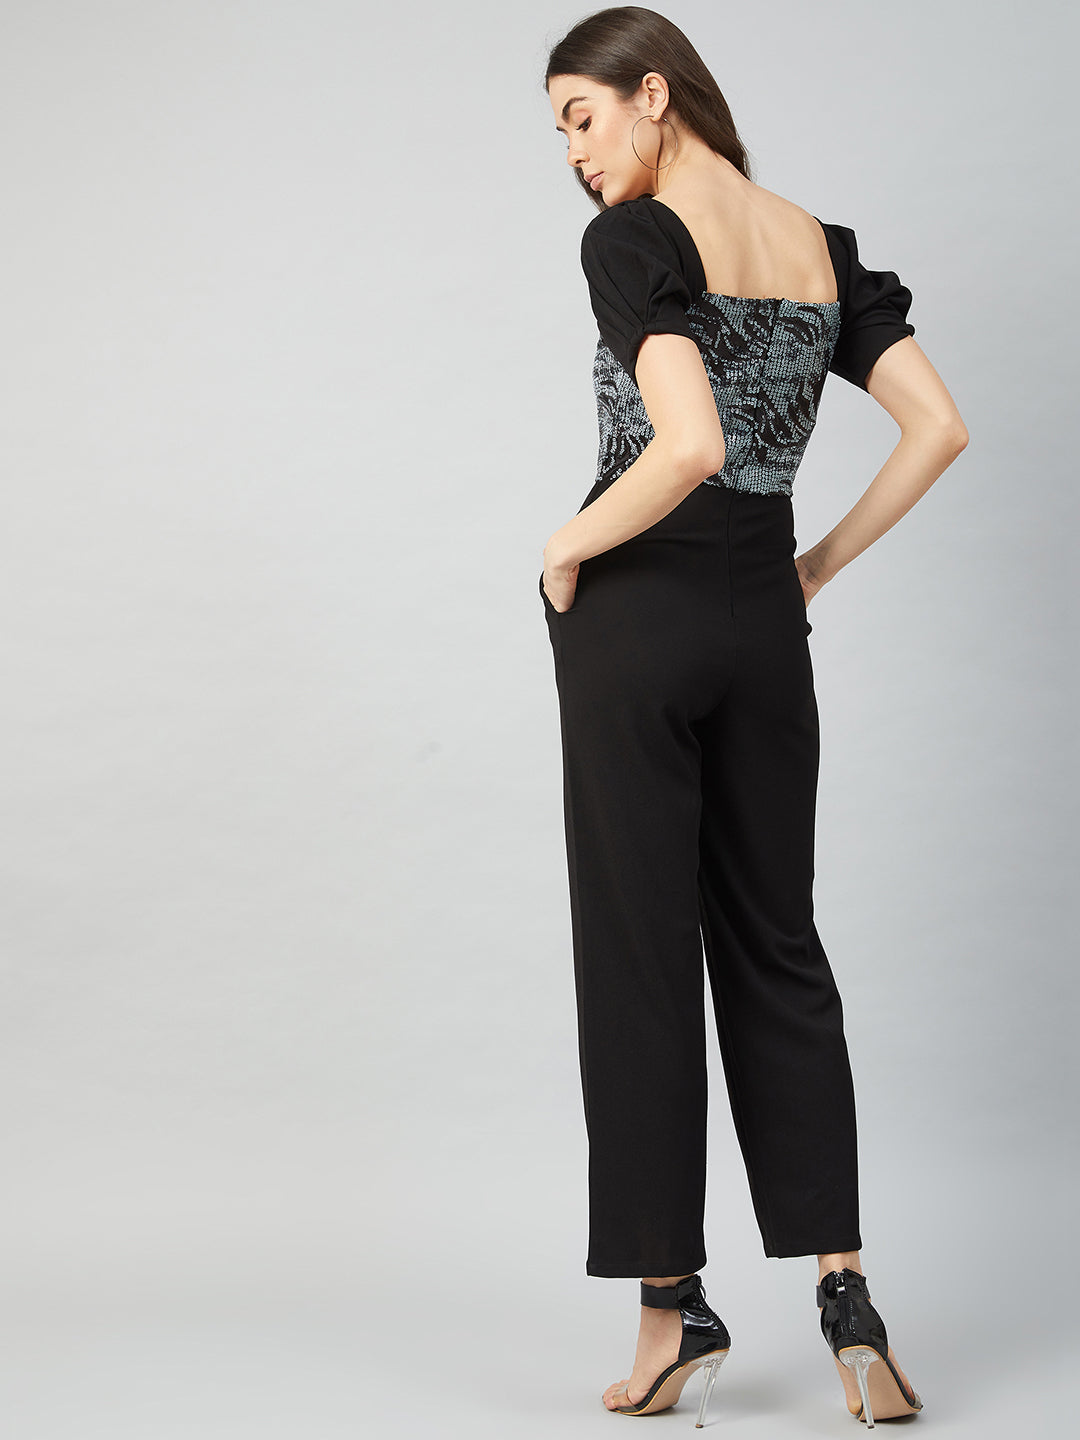 Athena Black & Silver-Toned Printed Basic Jumpsuit with Embellished - Athena Lifestyle